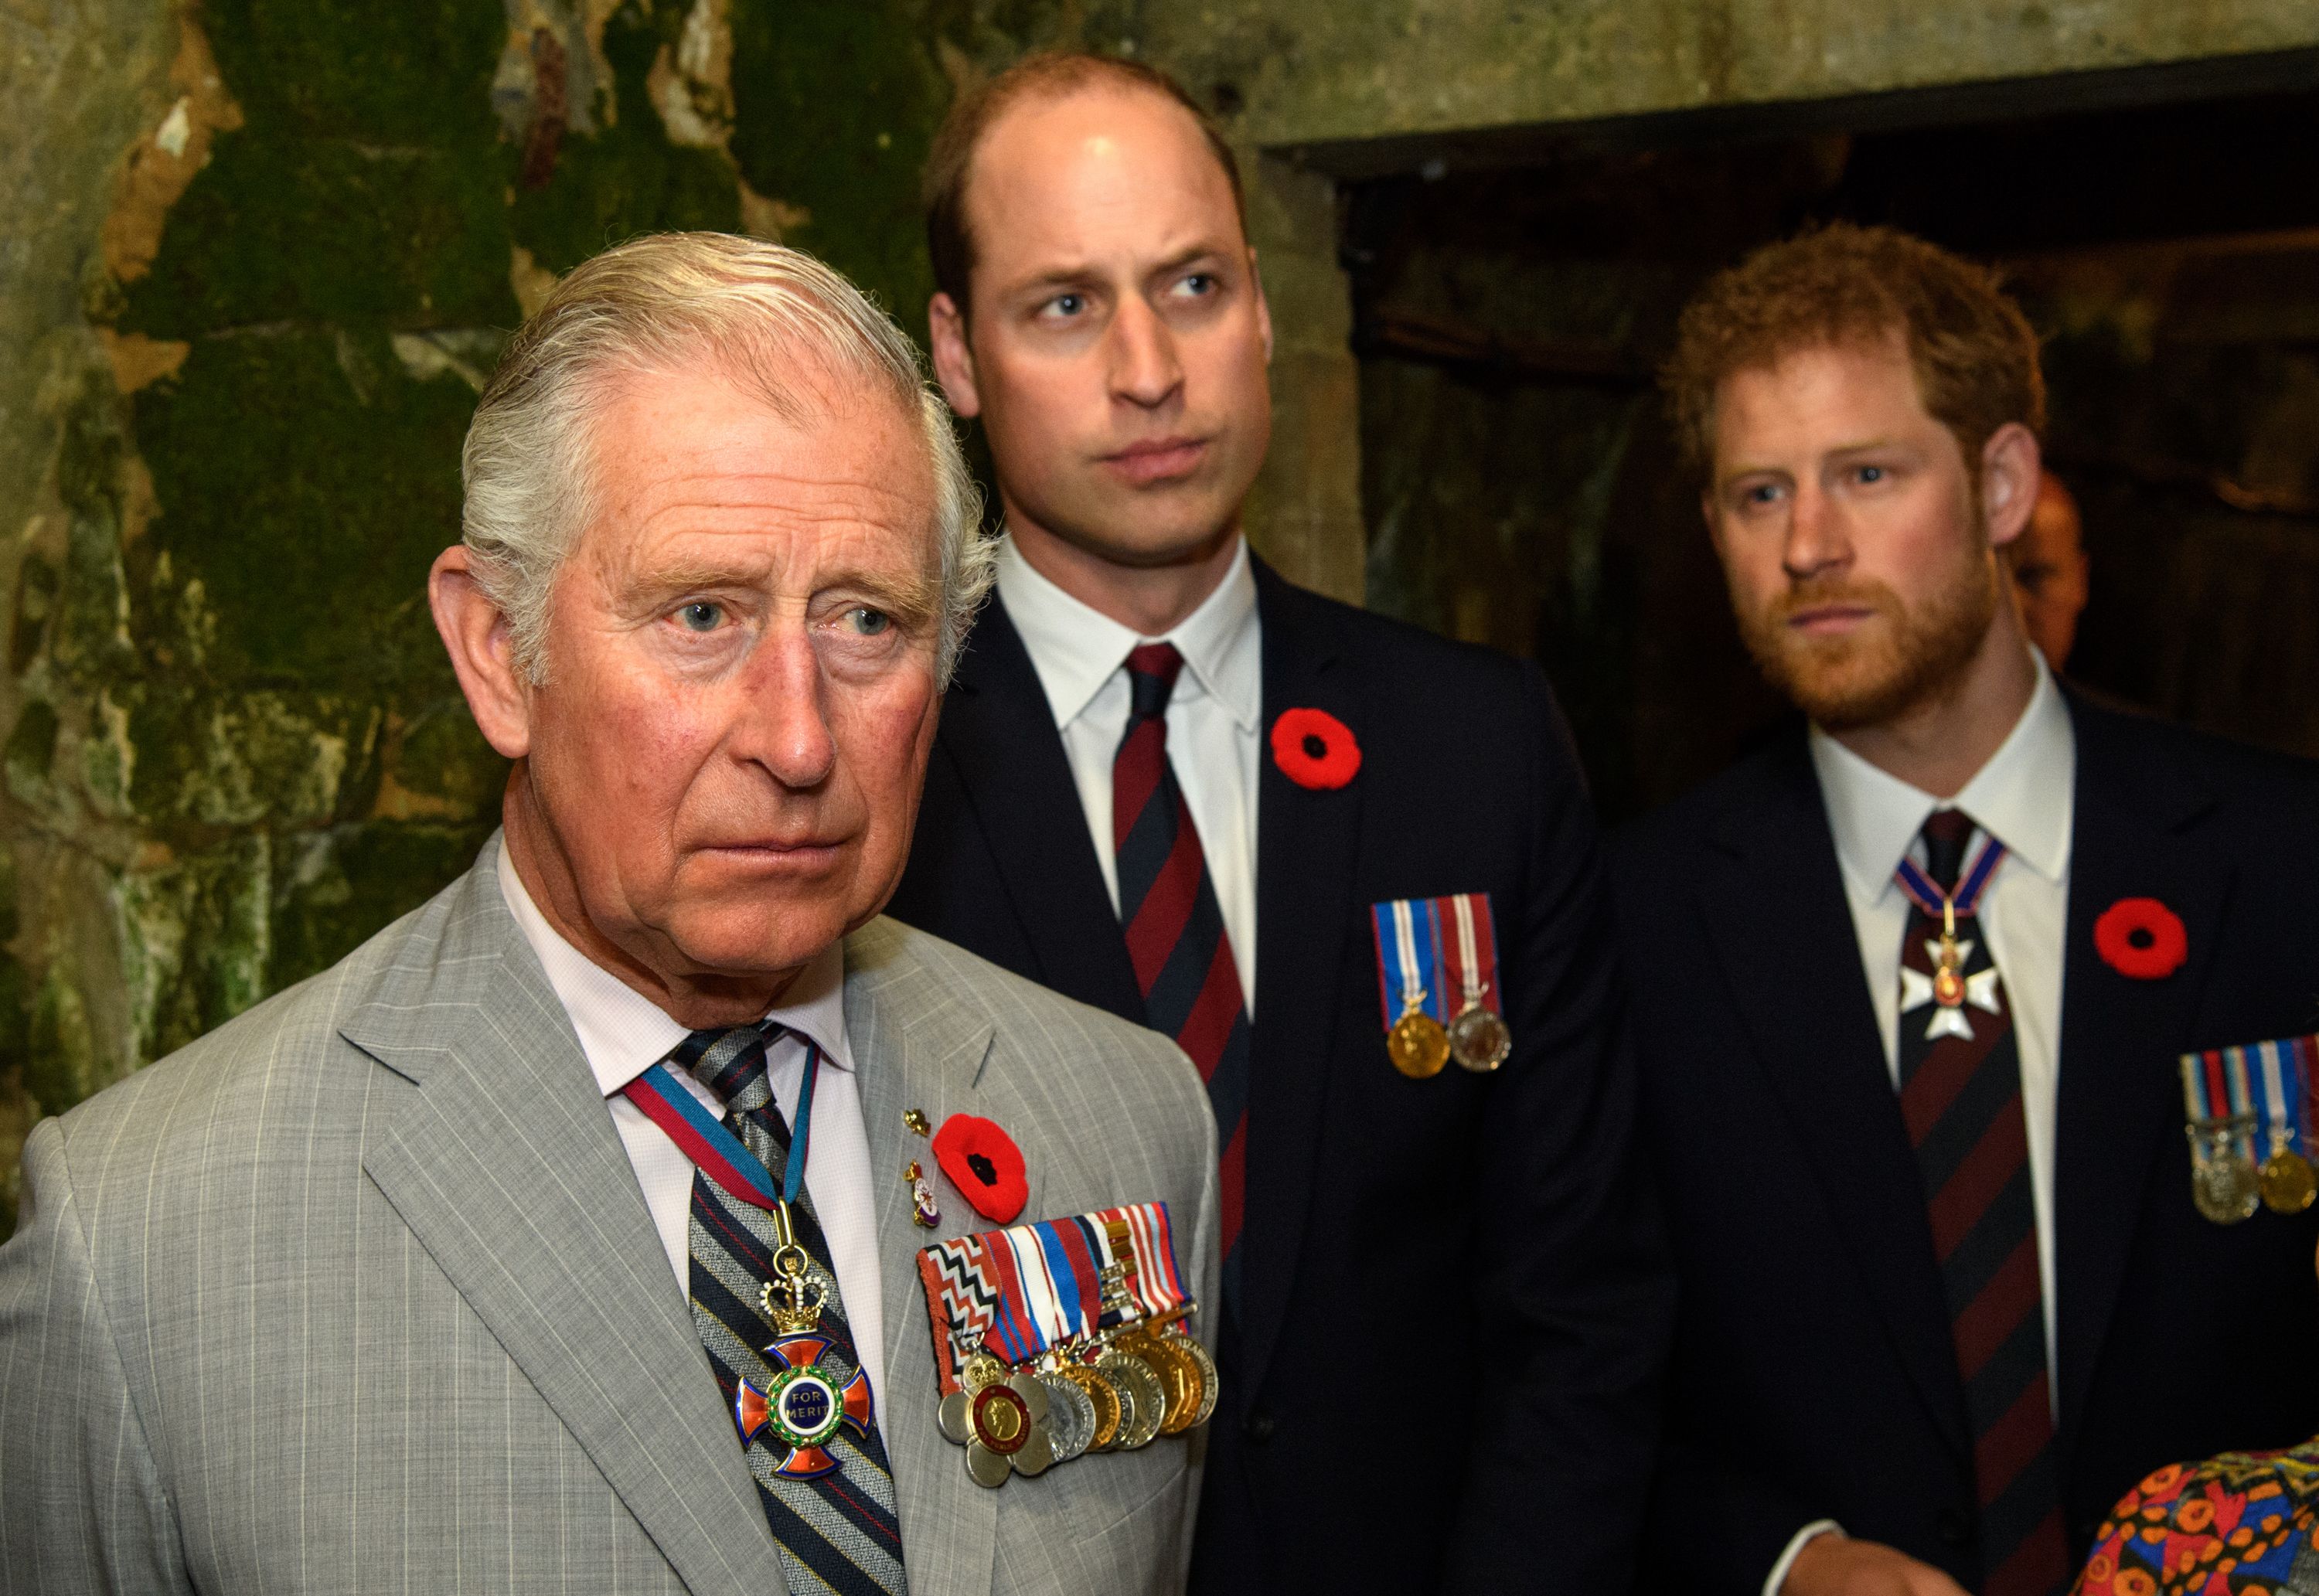 Prinz Charles, Prinz William und Prinz Harry während der Gedenkfeierlichkeiten zum 100. Jahrestag der Schlacht von Vimy Ridge am 9. April 2017 | Quelle: Getty Images